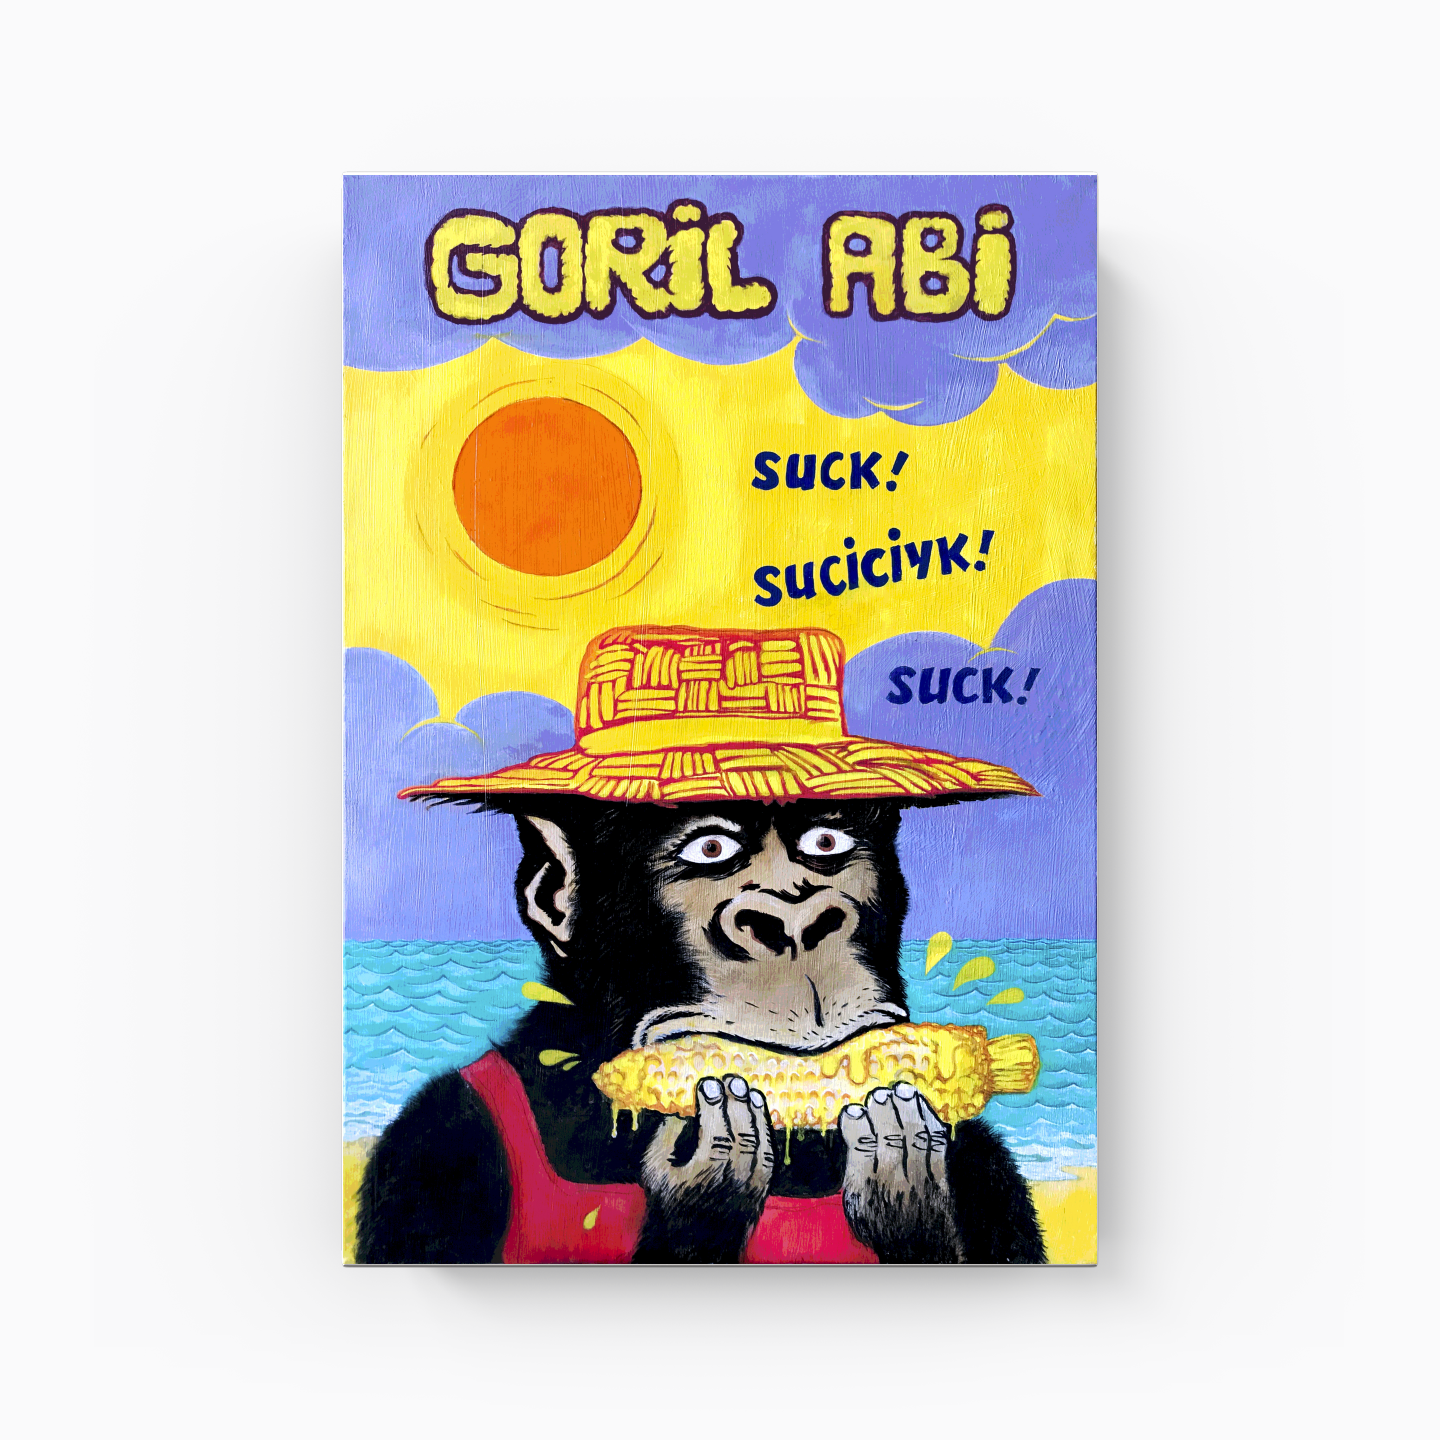 Goril Abi - Kanvas Tablo